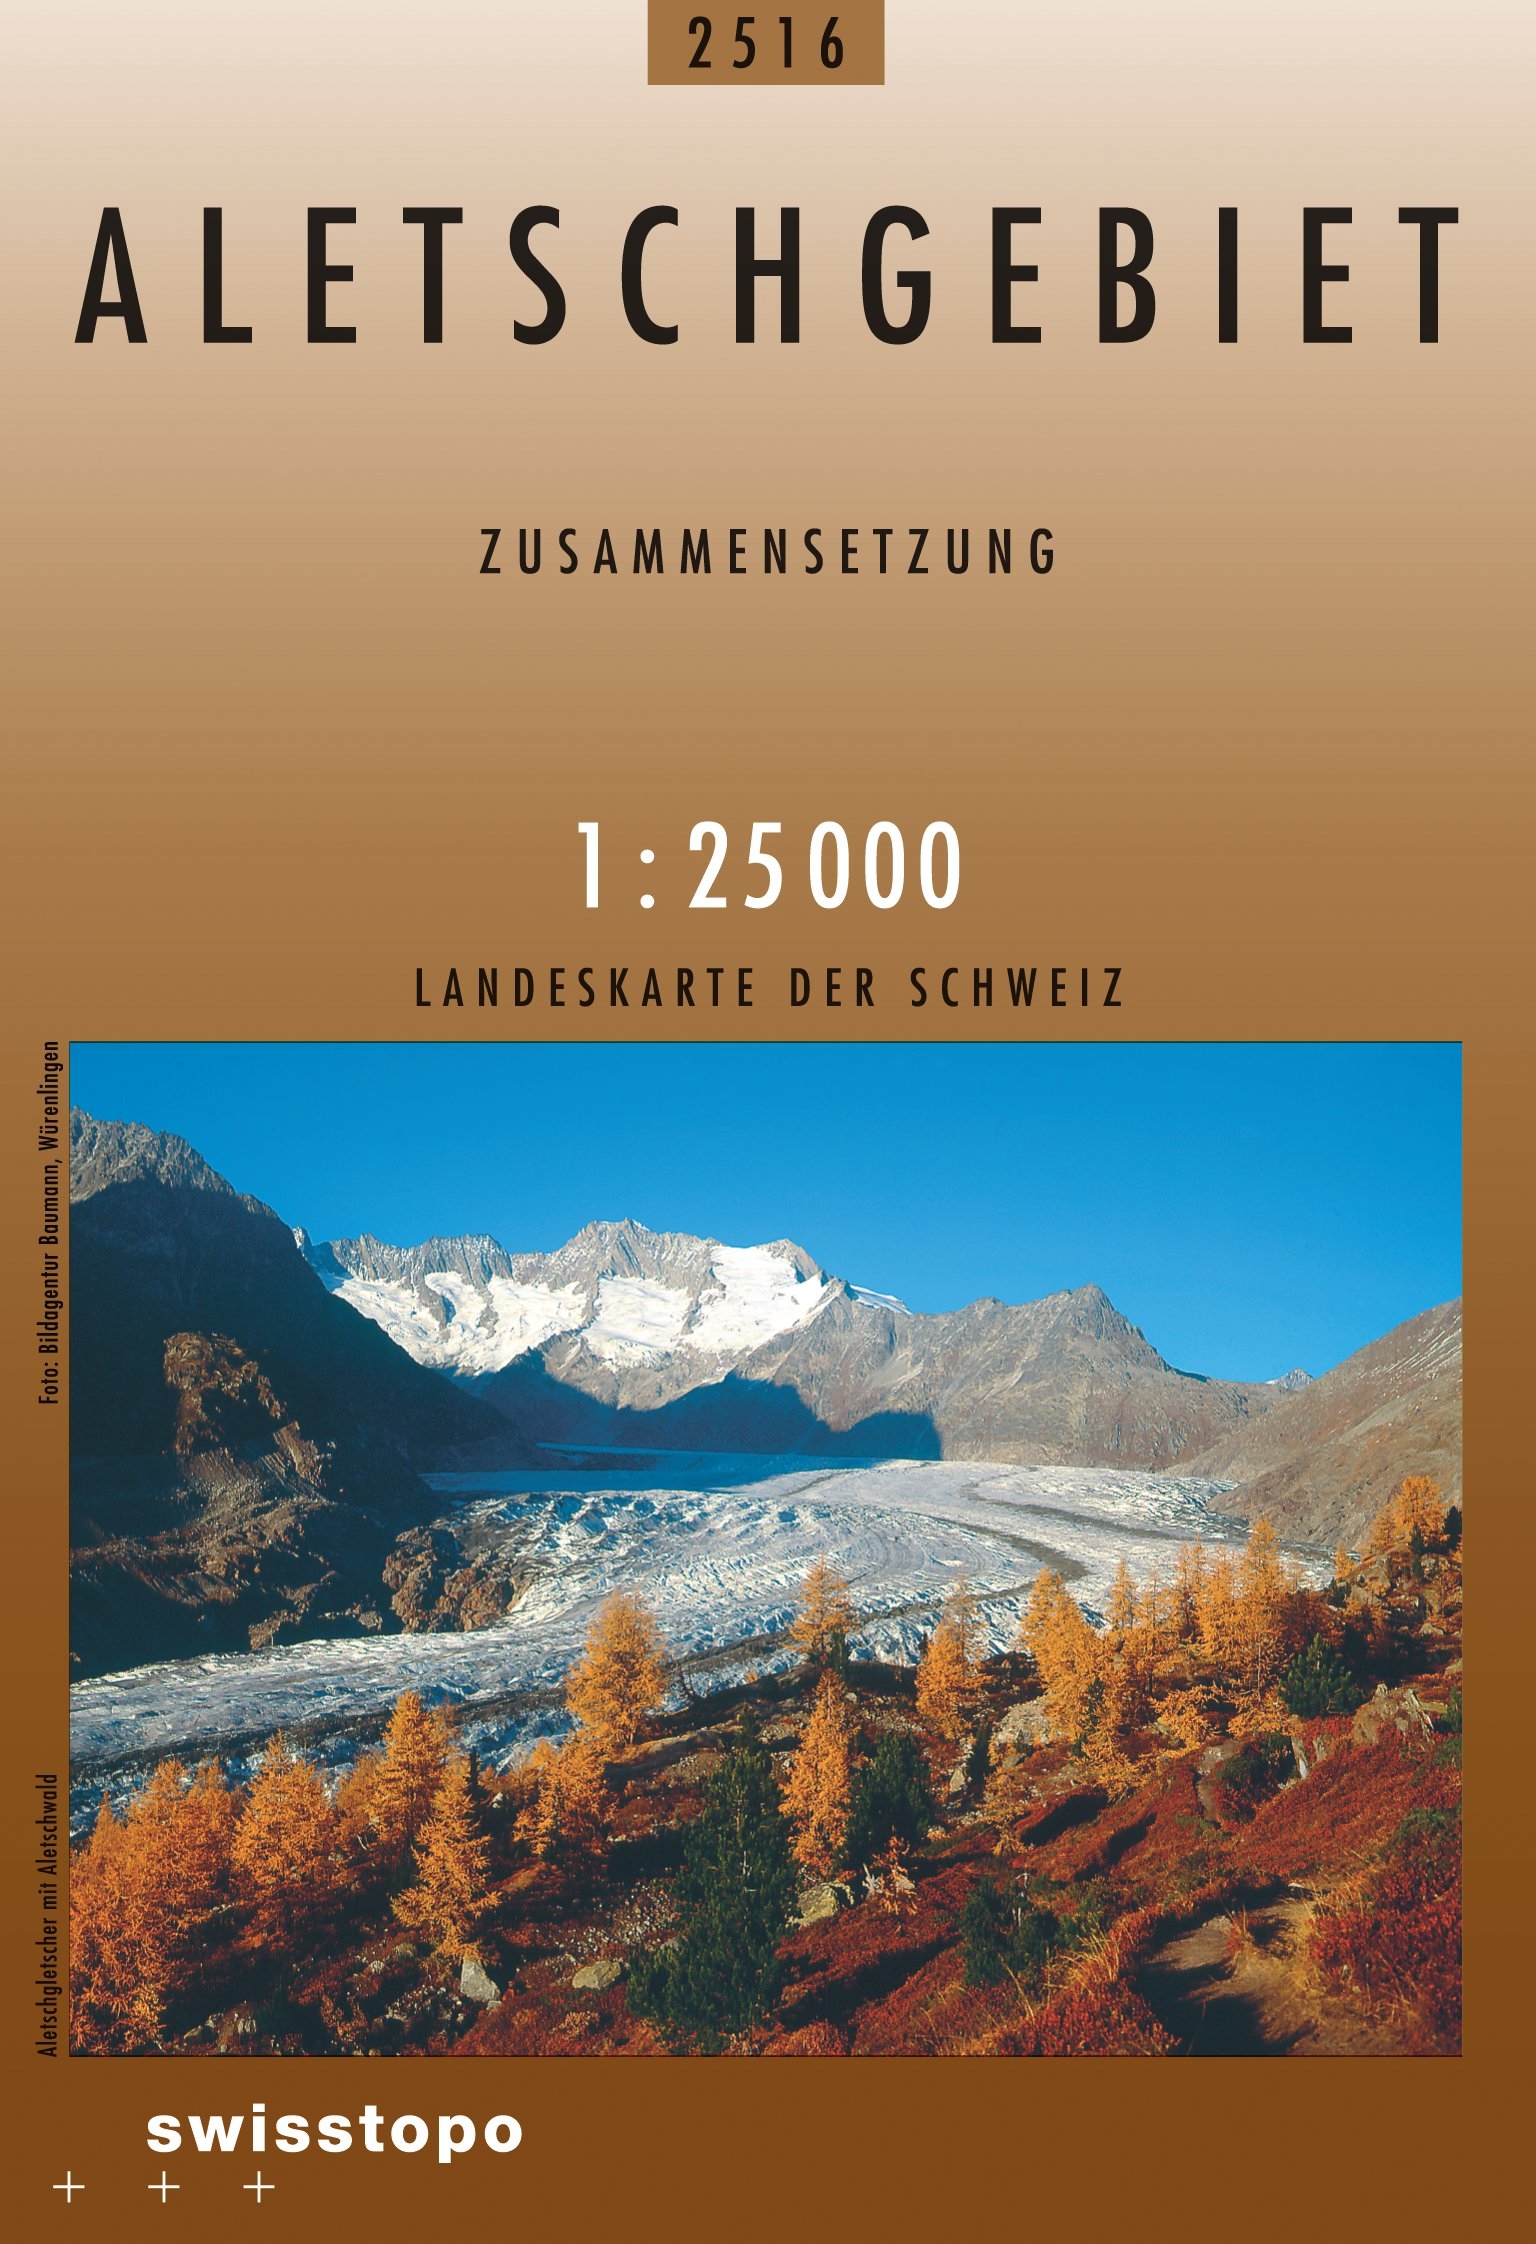 Swisstopo Landeskarte 1 : 25'000 Zusammensetzung Aletschgebiet<br>